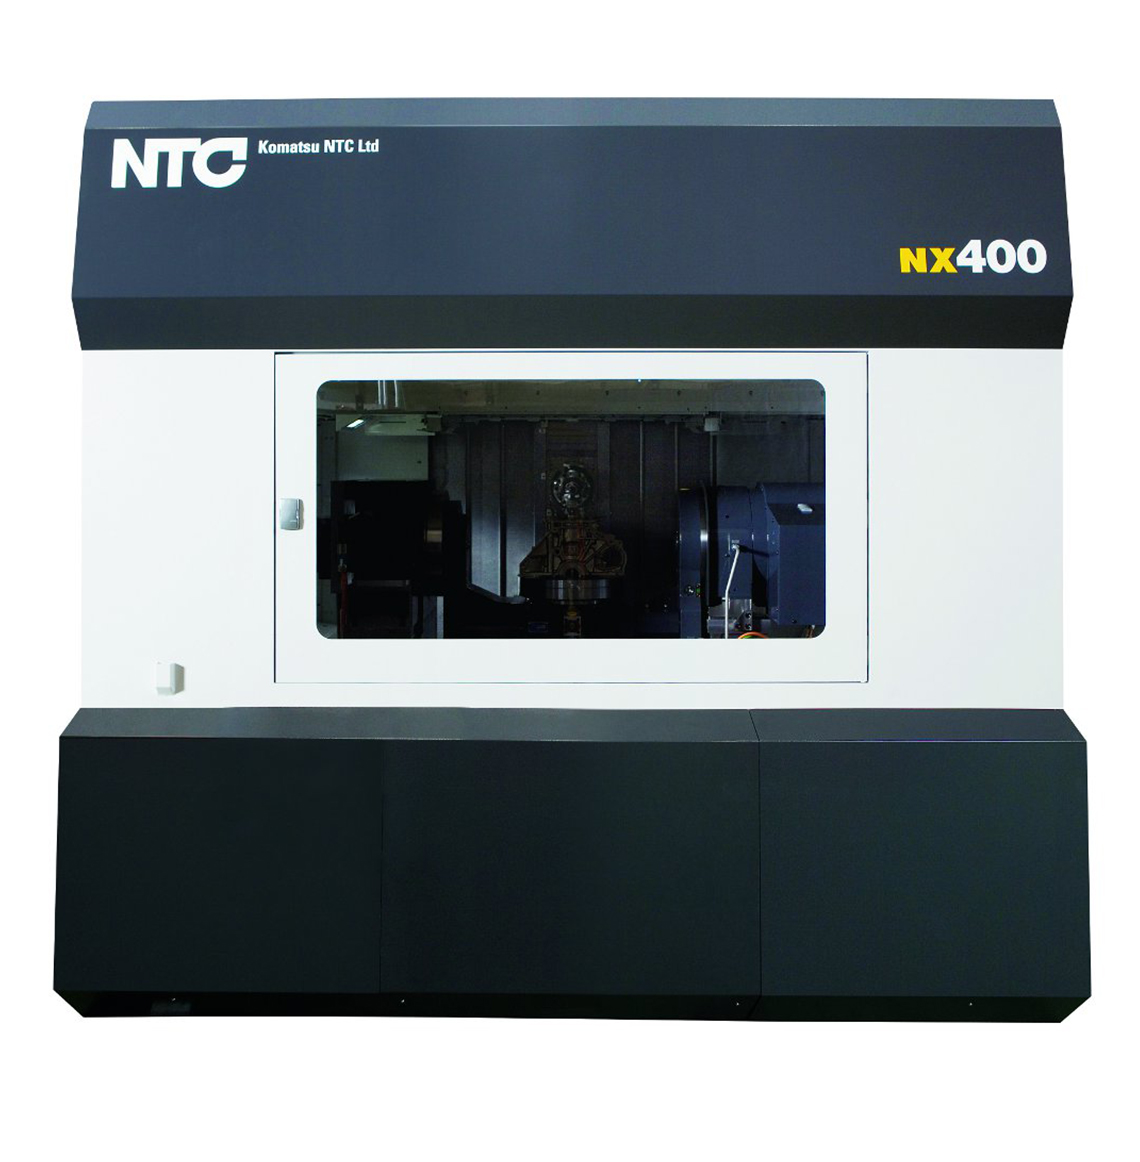 NX400 Horizontal Machining Center